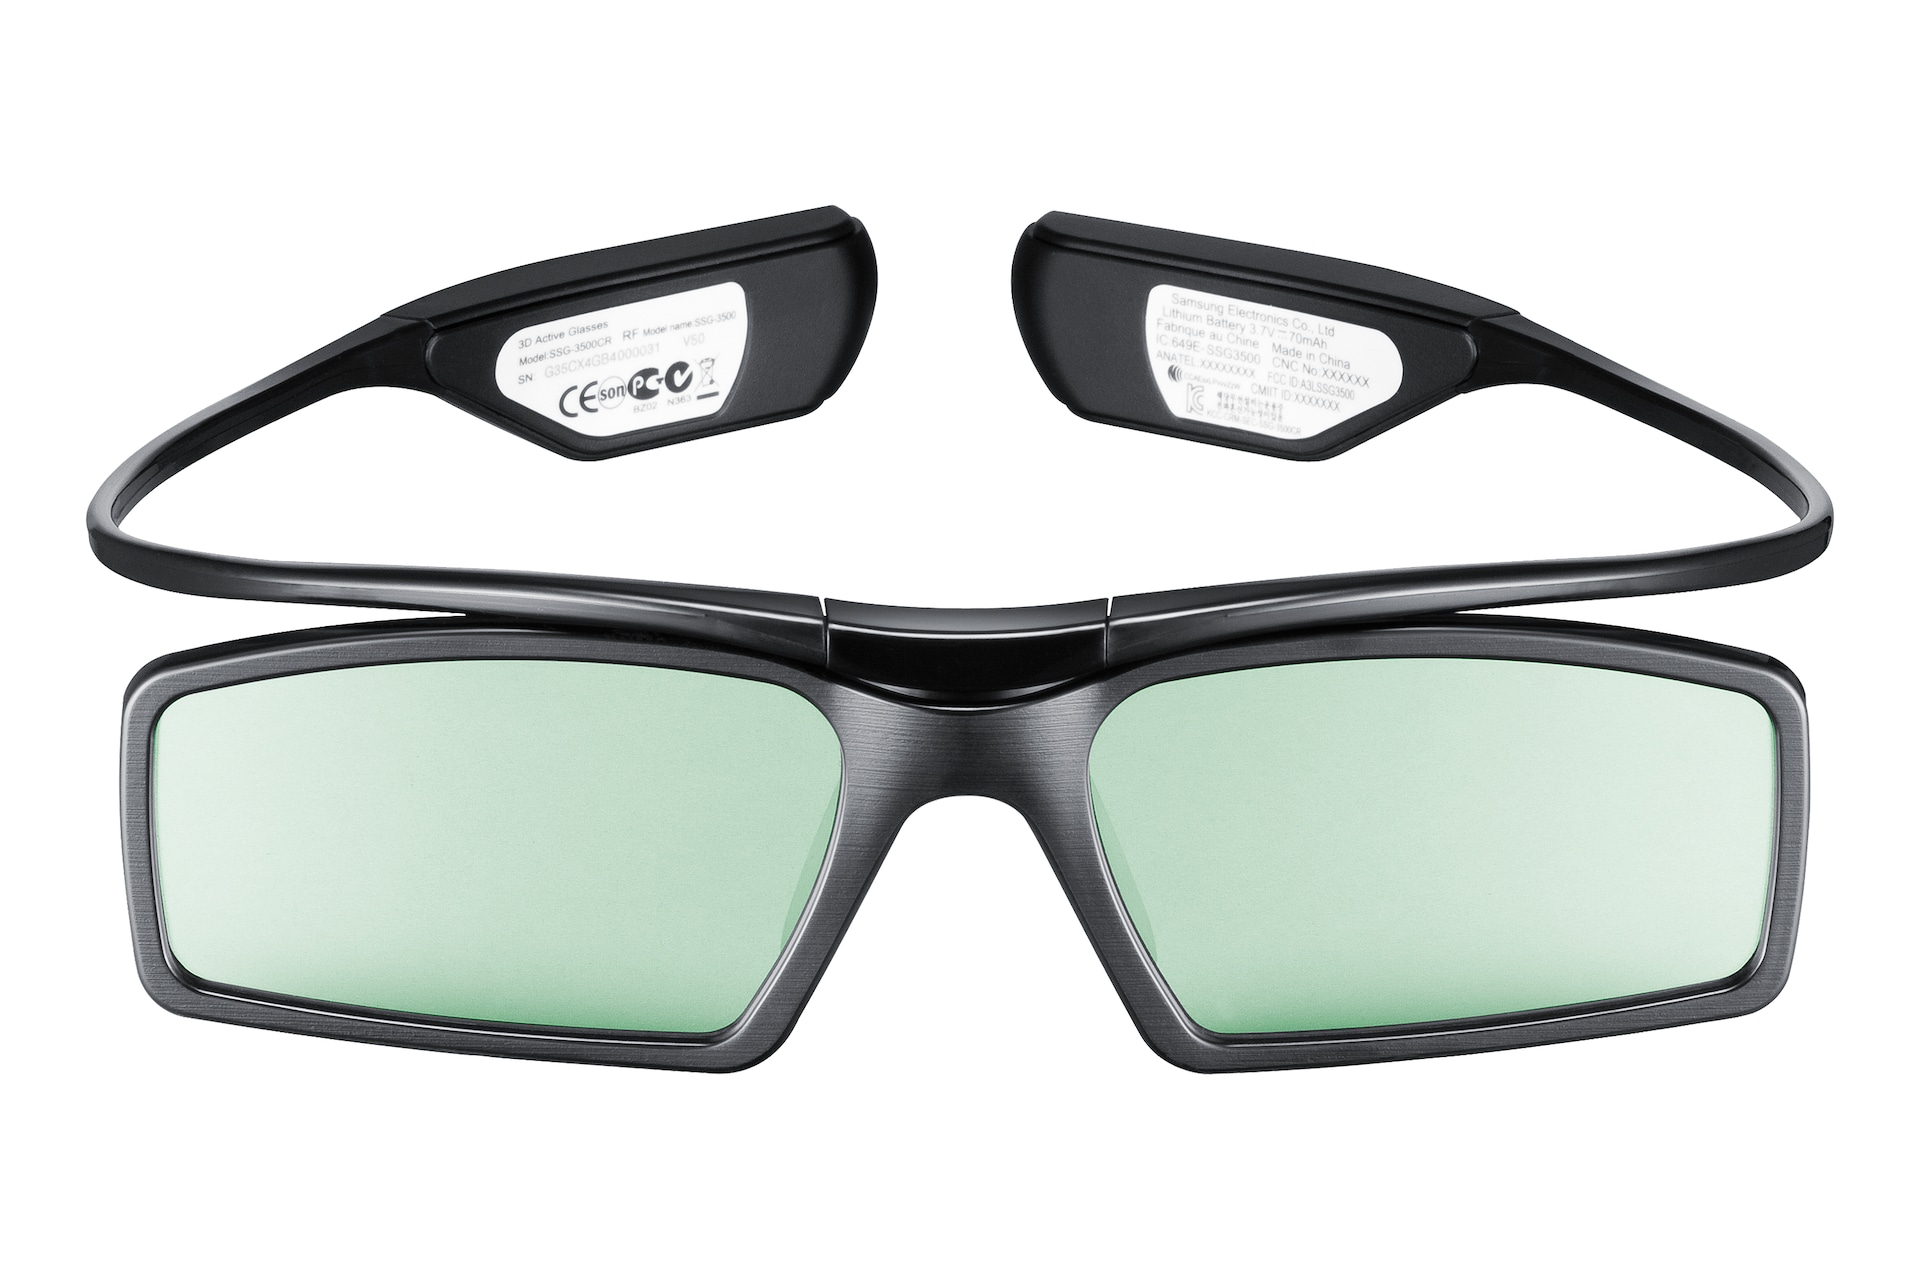 3д очки модель SSG 3500cr. Очки 3d Active Glasses Samsung. 3d активные очки Samsung 6500. SSG m3750cr/it самсунг очки. Солнечные очки 3